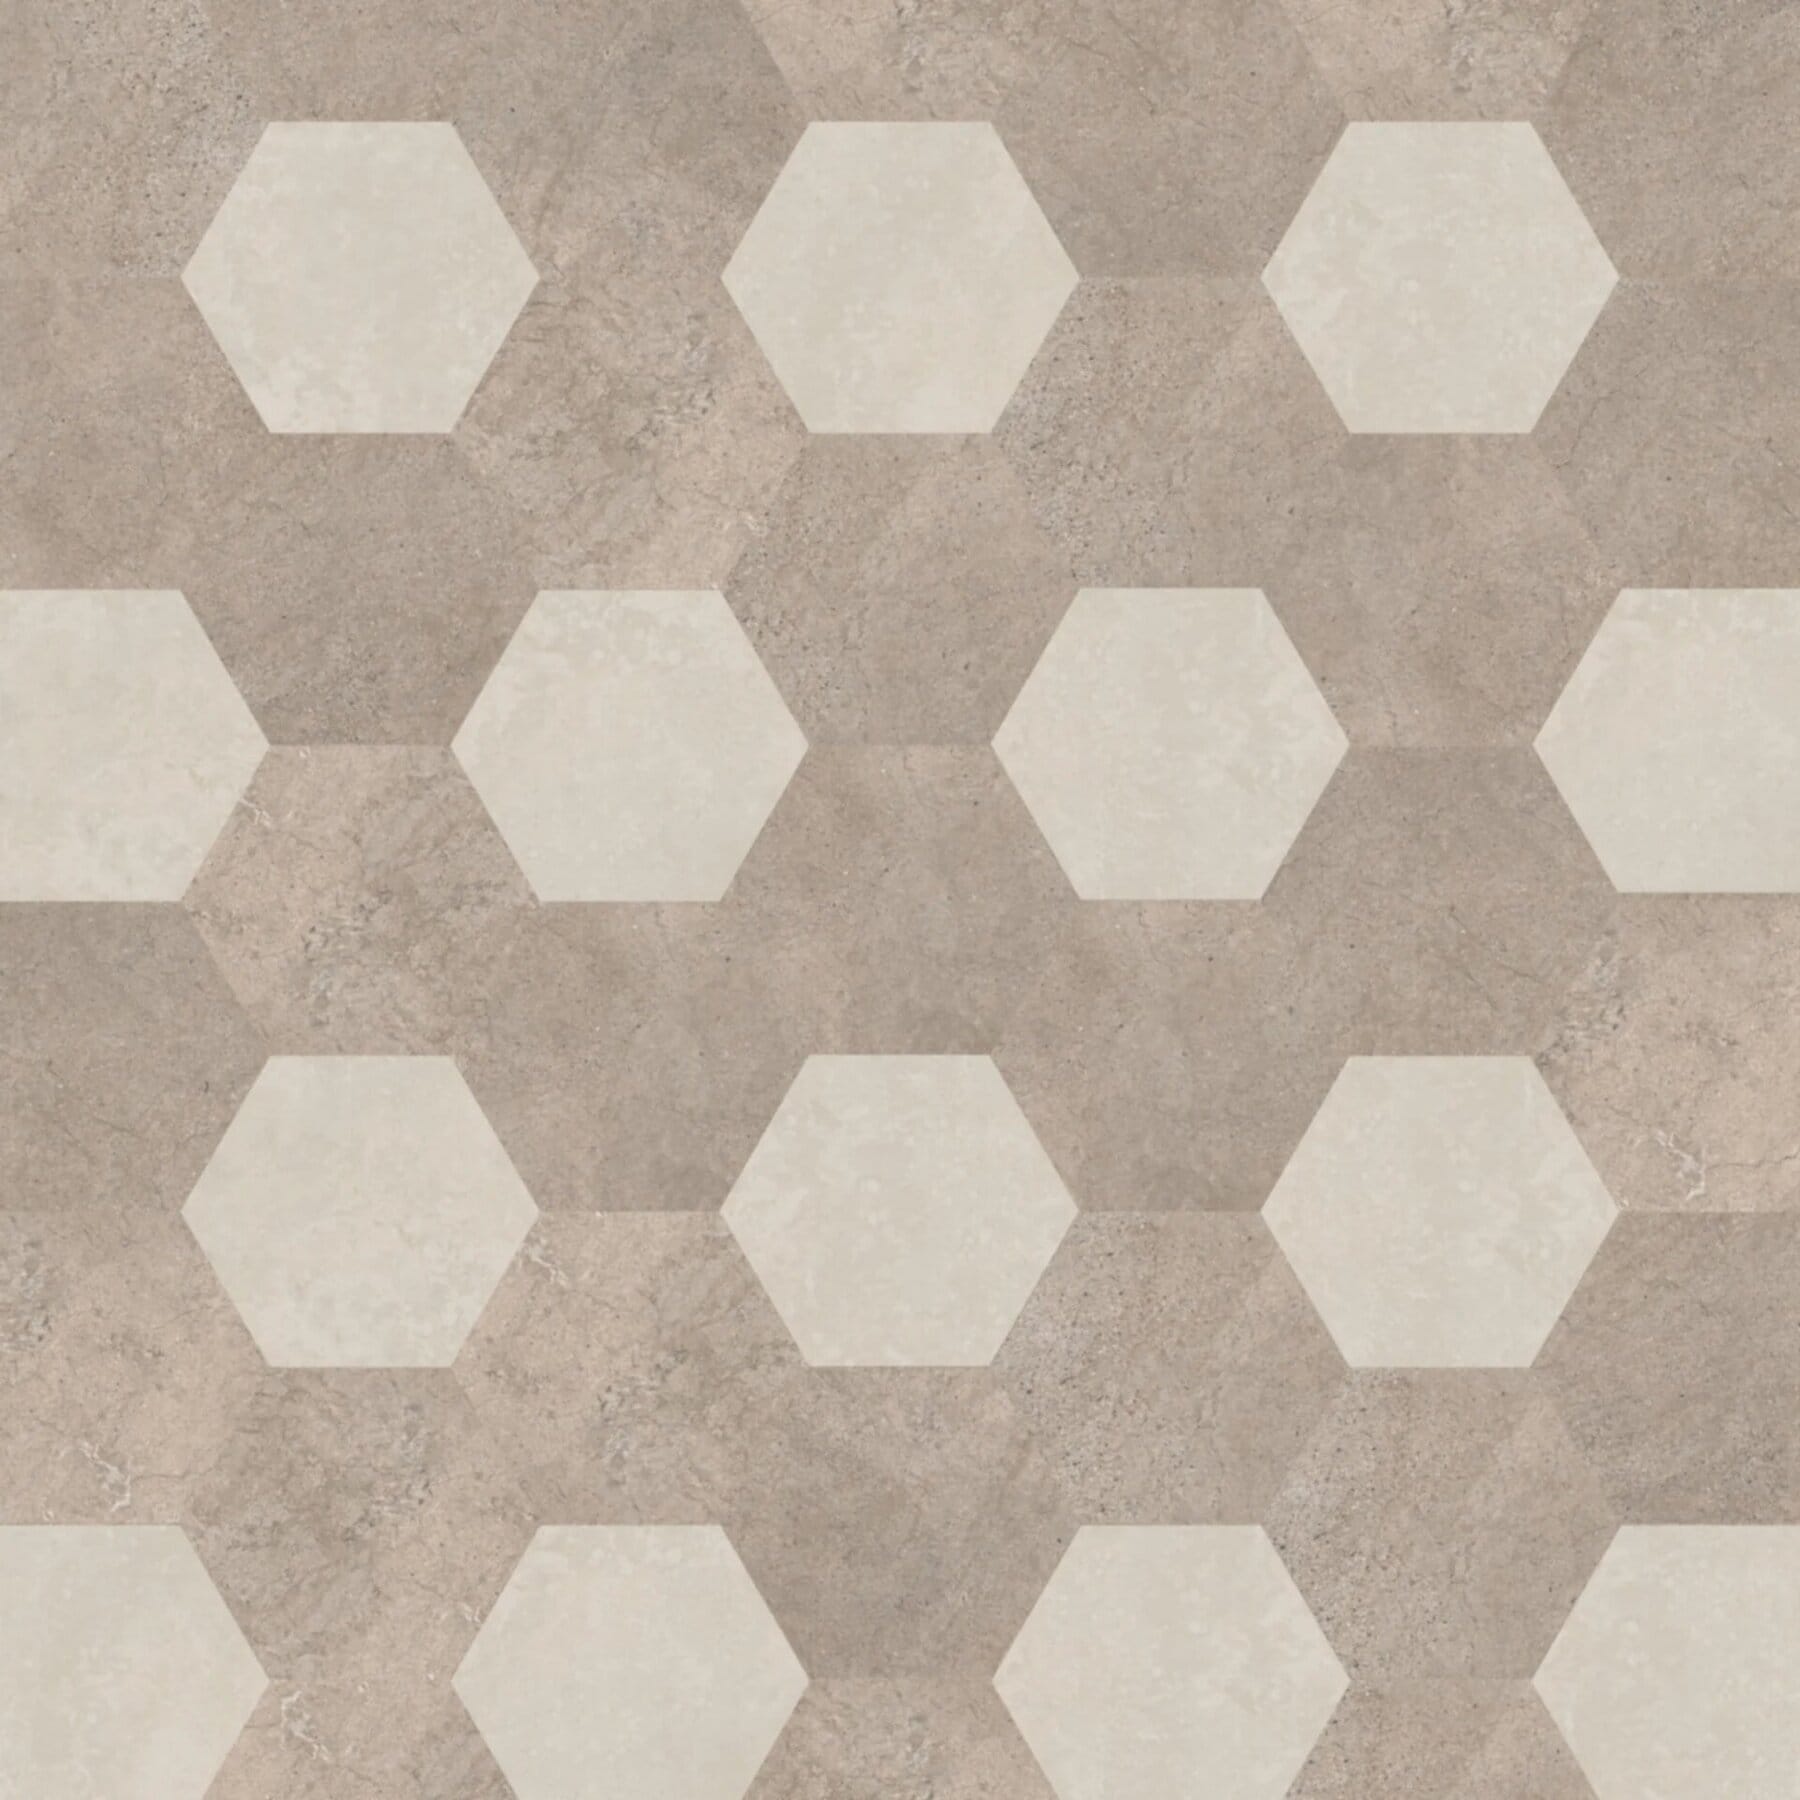 View of KAL09 Hexa luxury vinyl tile by Karndean